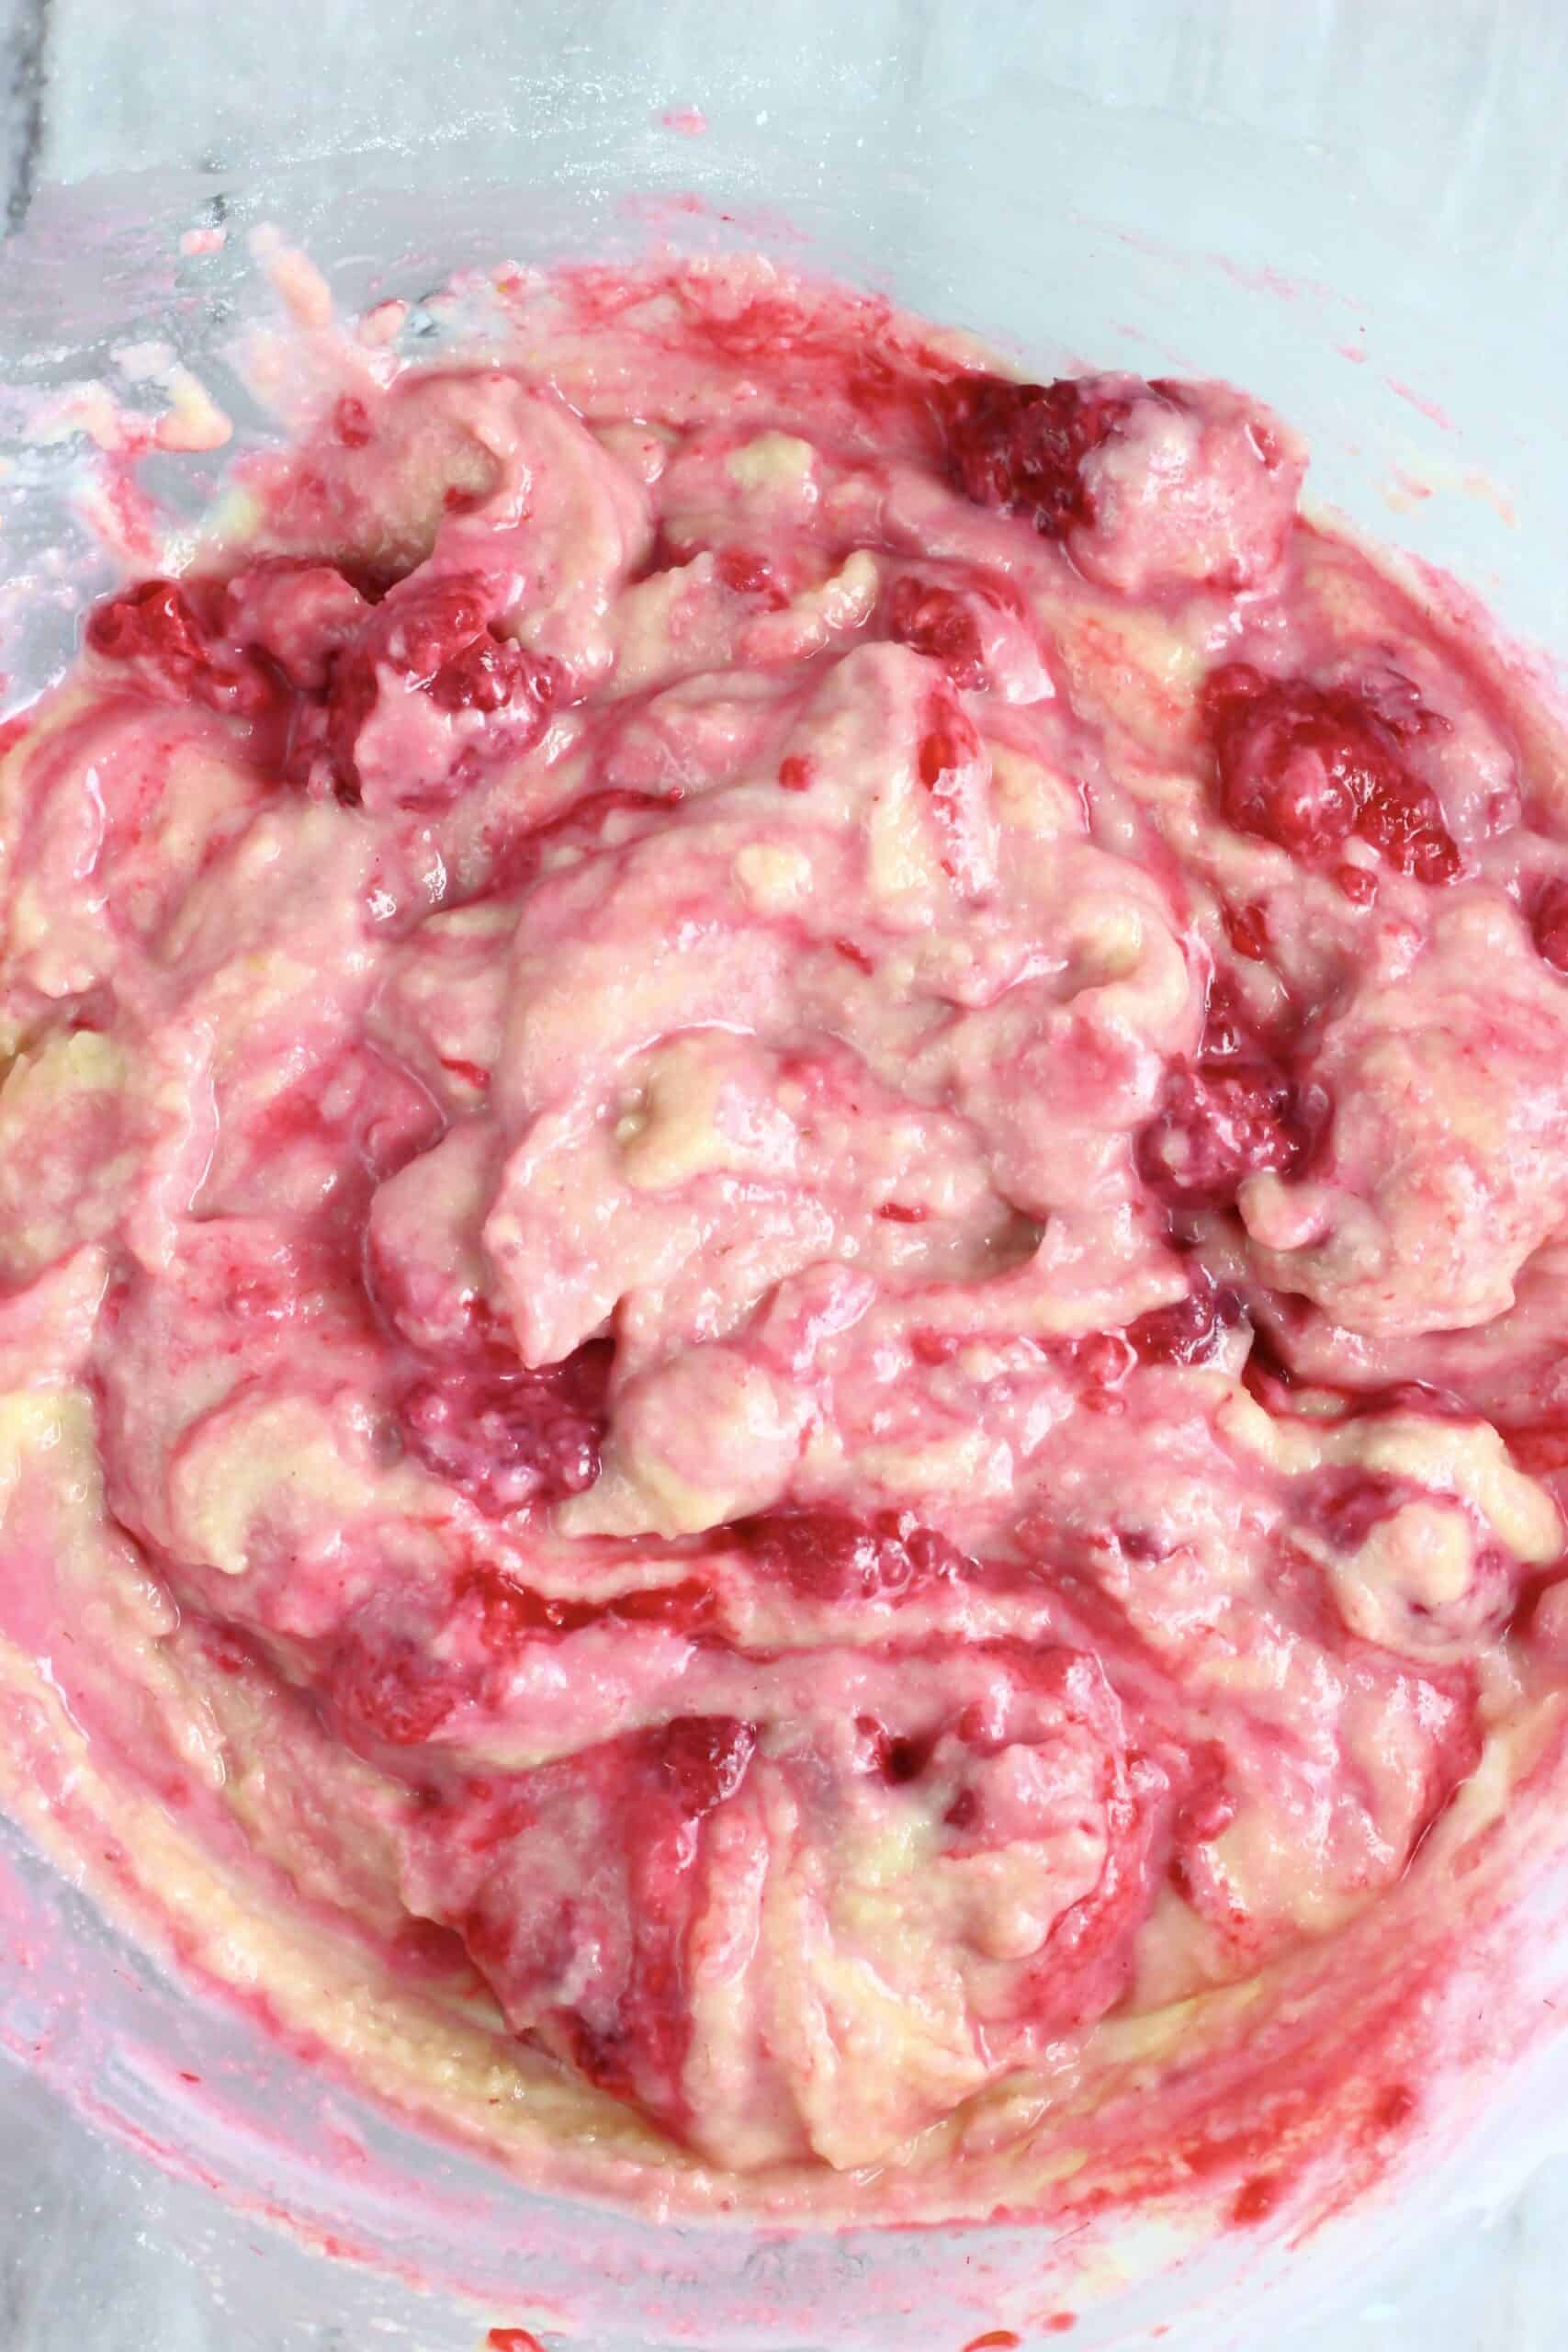 Raw gluten-free vegan raspberry madeleines batter in a bowl